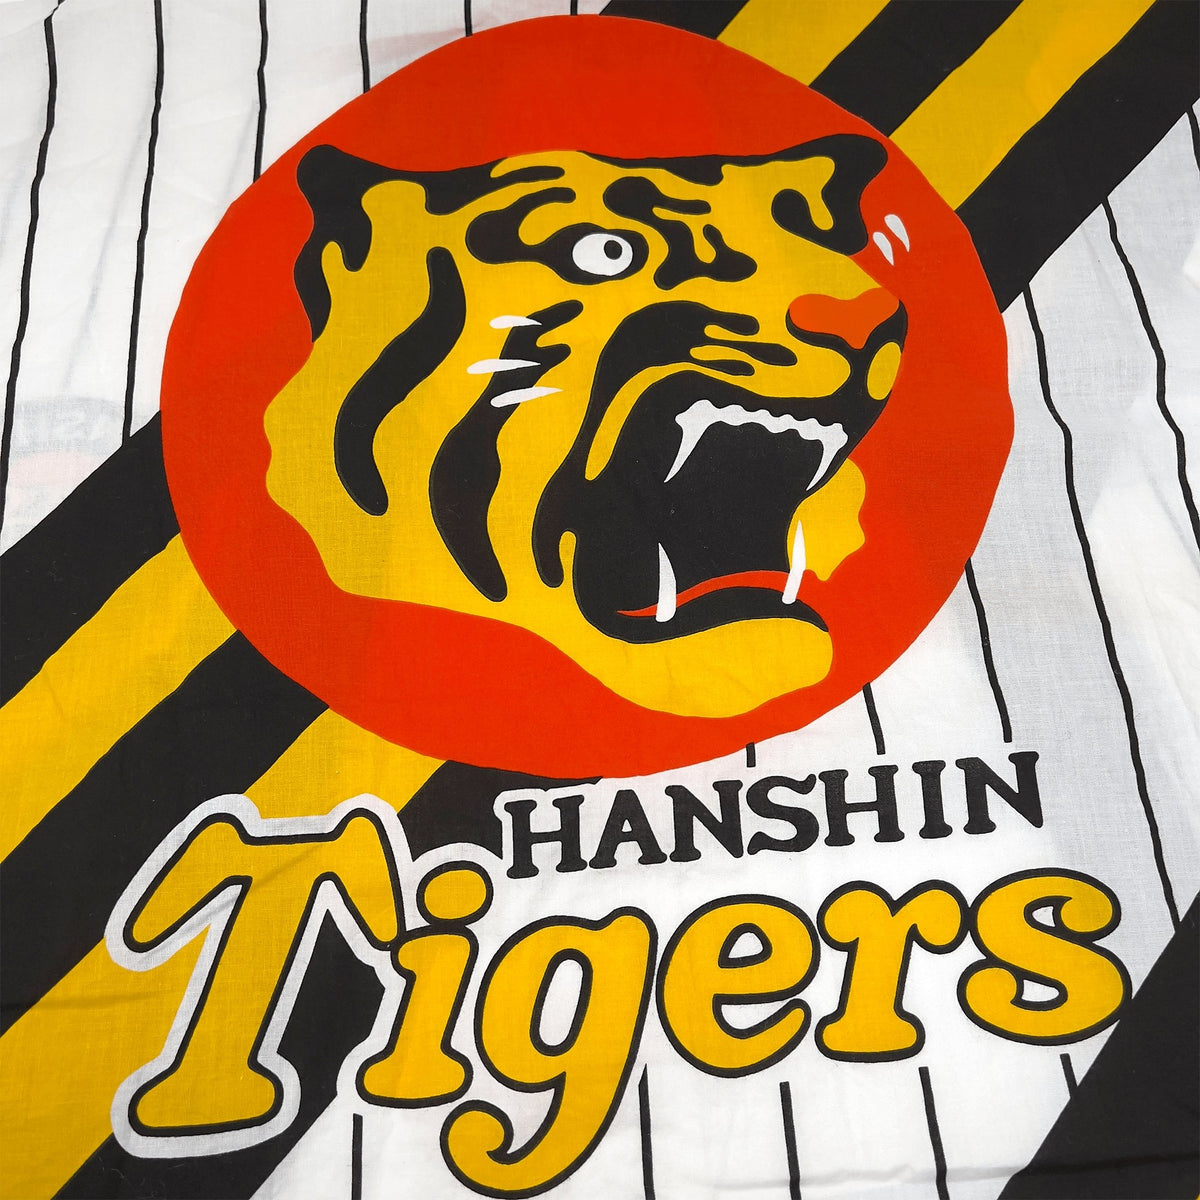 Retro Japanese Baseball Hanshin Tigers Matsuri Happi Coat Yukata Kimono White - Sugoi JDM